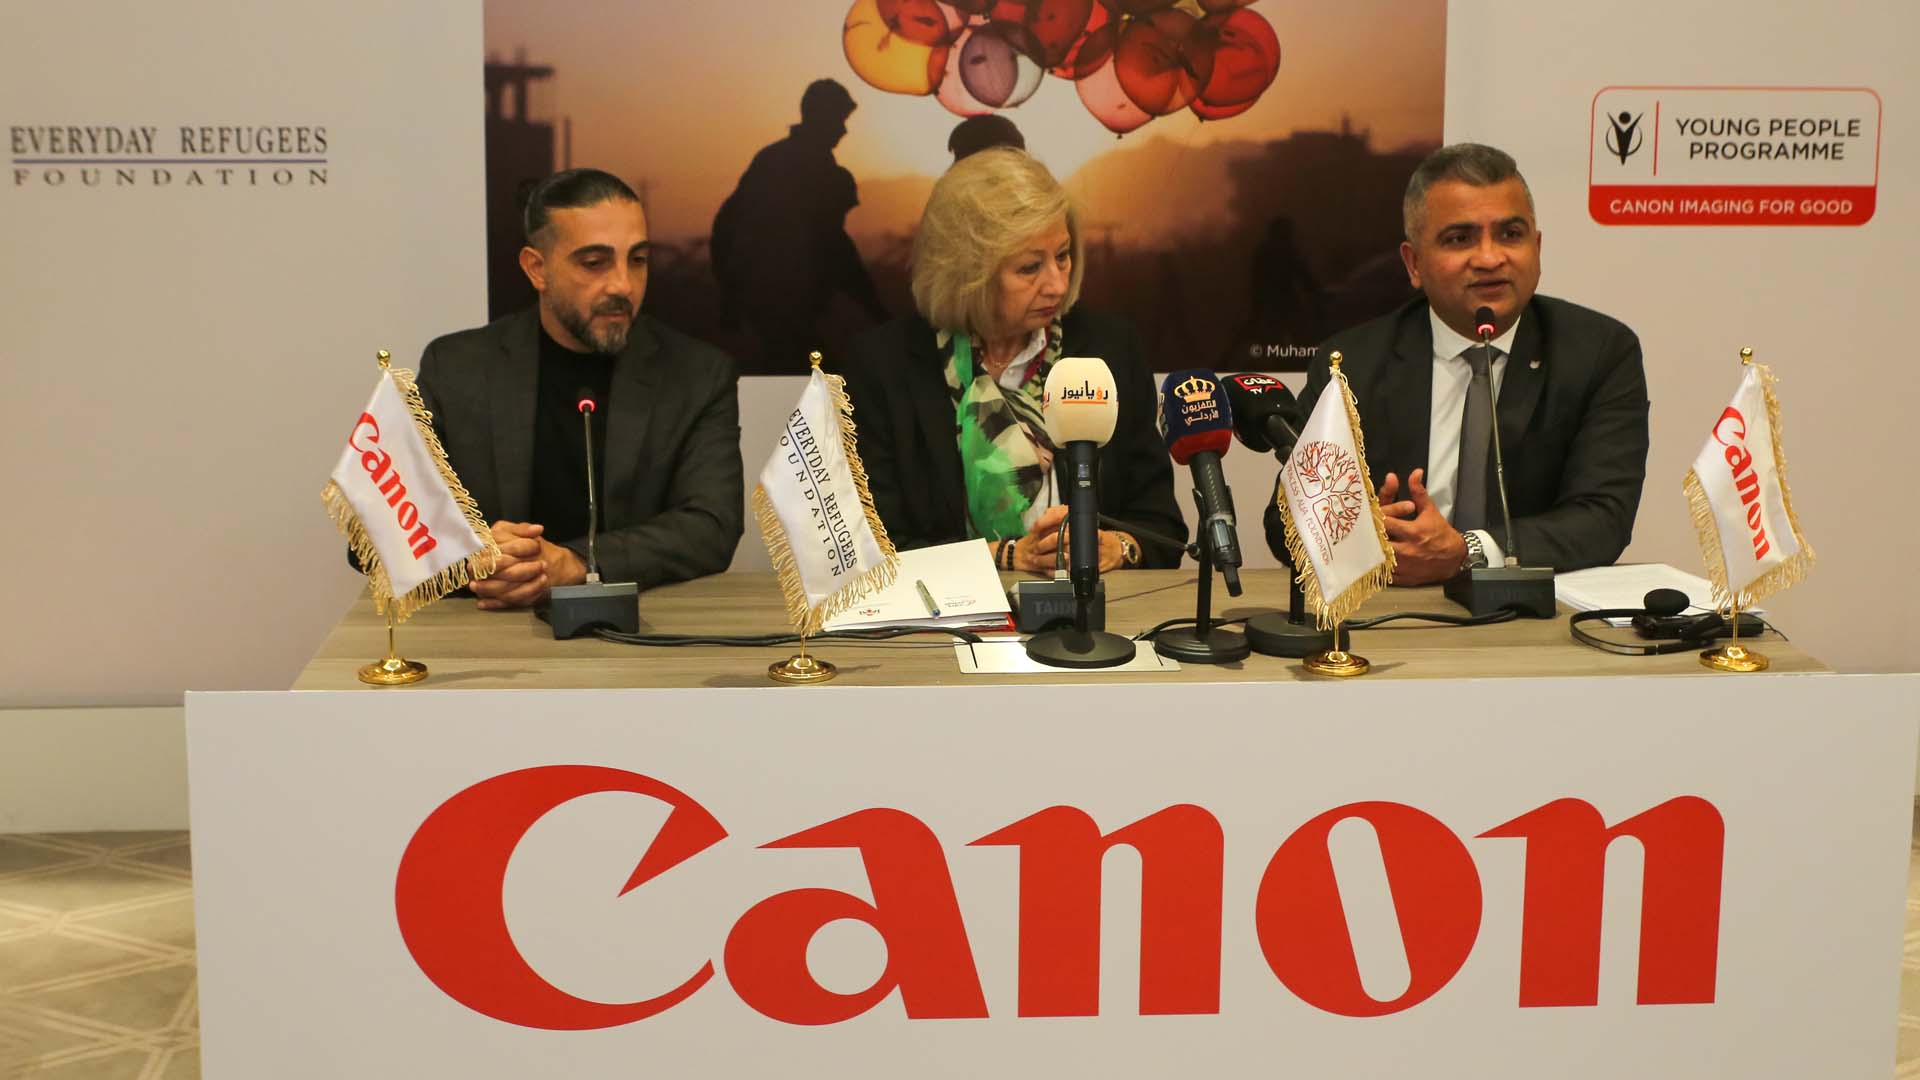 كانون Canon تطلق “برنامج الشباب” في الأردن لإلهام الشباب وتثقيفهم وتمكينهم